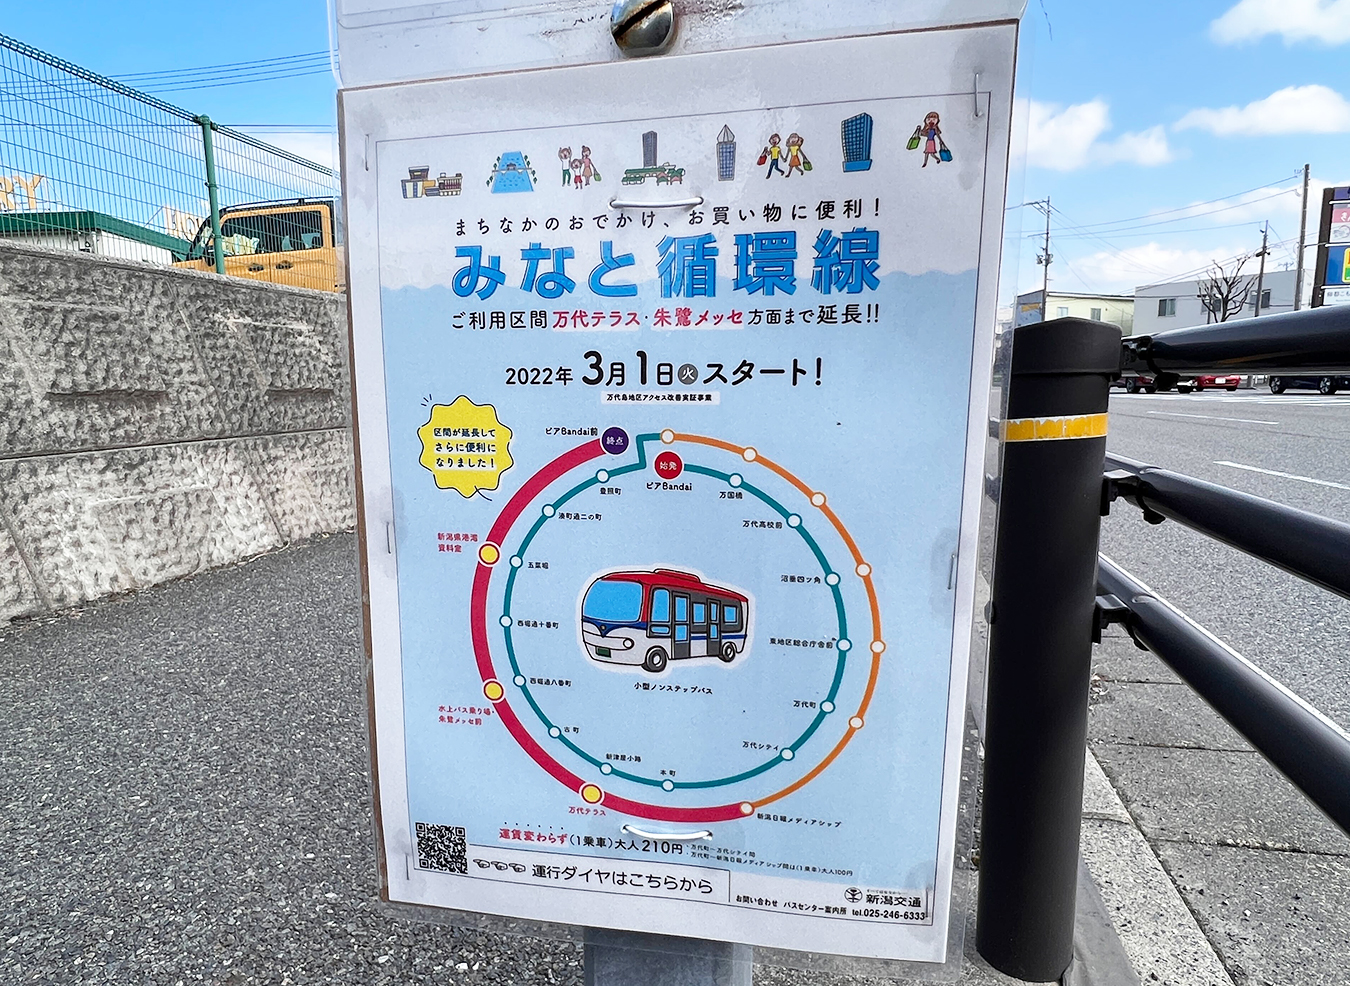 万代島エリアまで延長！！新潟交通路線バス『みなと循環線』の運行ルートを延伸しているそう！！